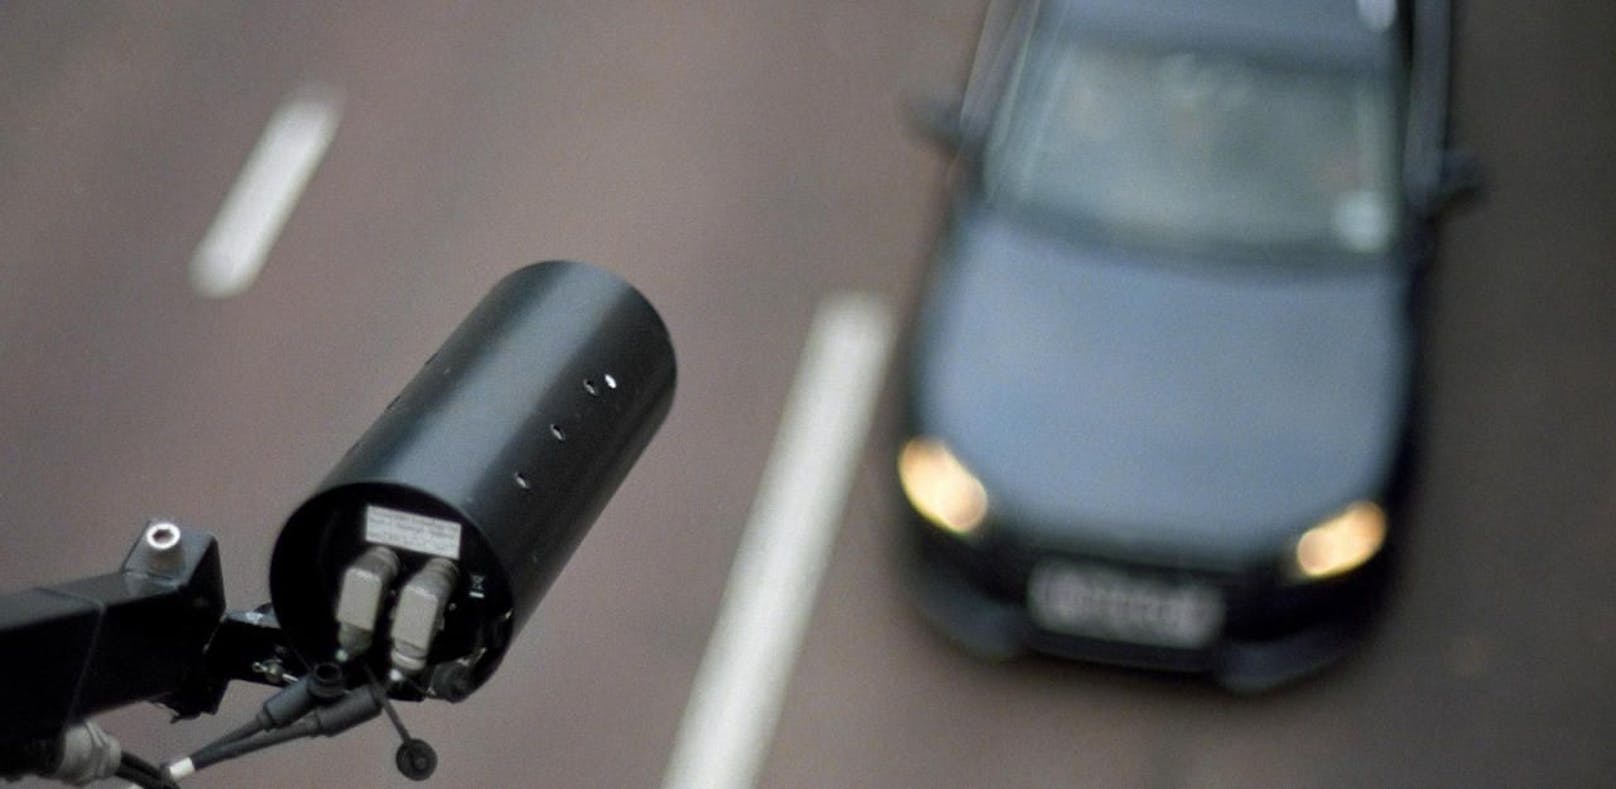 Ab sofort nimmt die australische Polizei Autofahrer, die ihr Smartphone verbotenerweise während der Fahrt verwenden, genauer ins Visier.